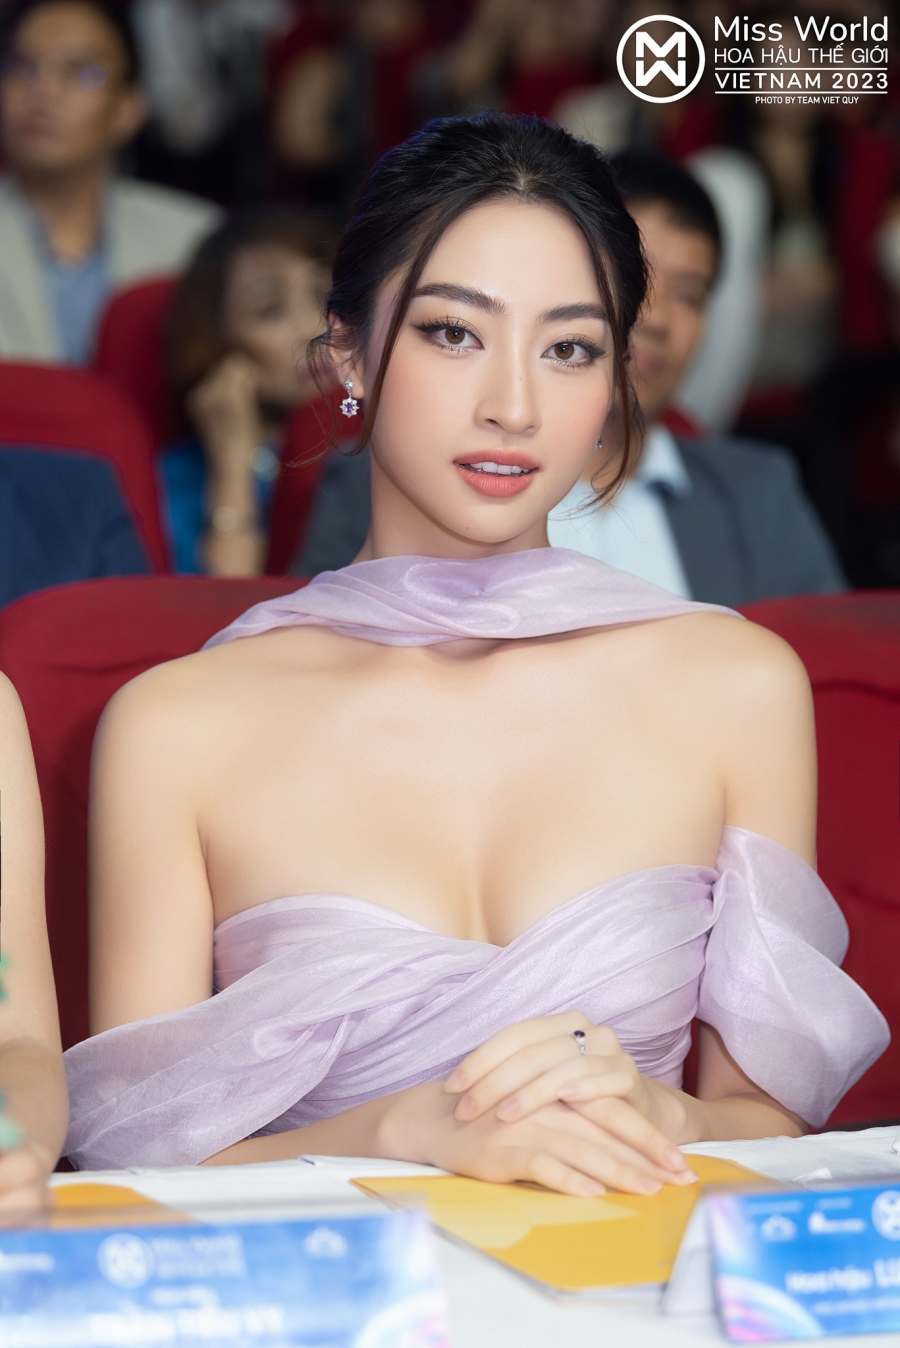 Phó trưởng BGK Miss World Vietnam Lương Thuỳ Linh: 